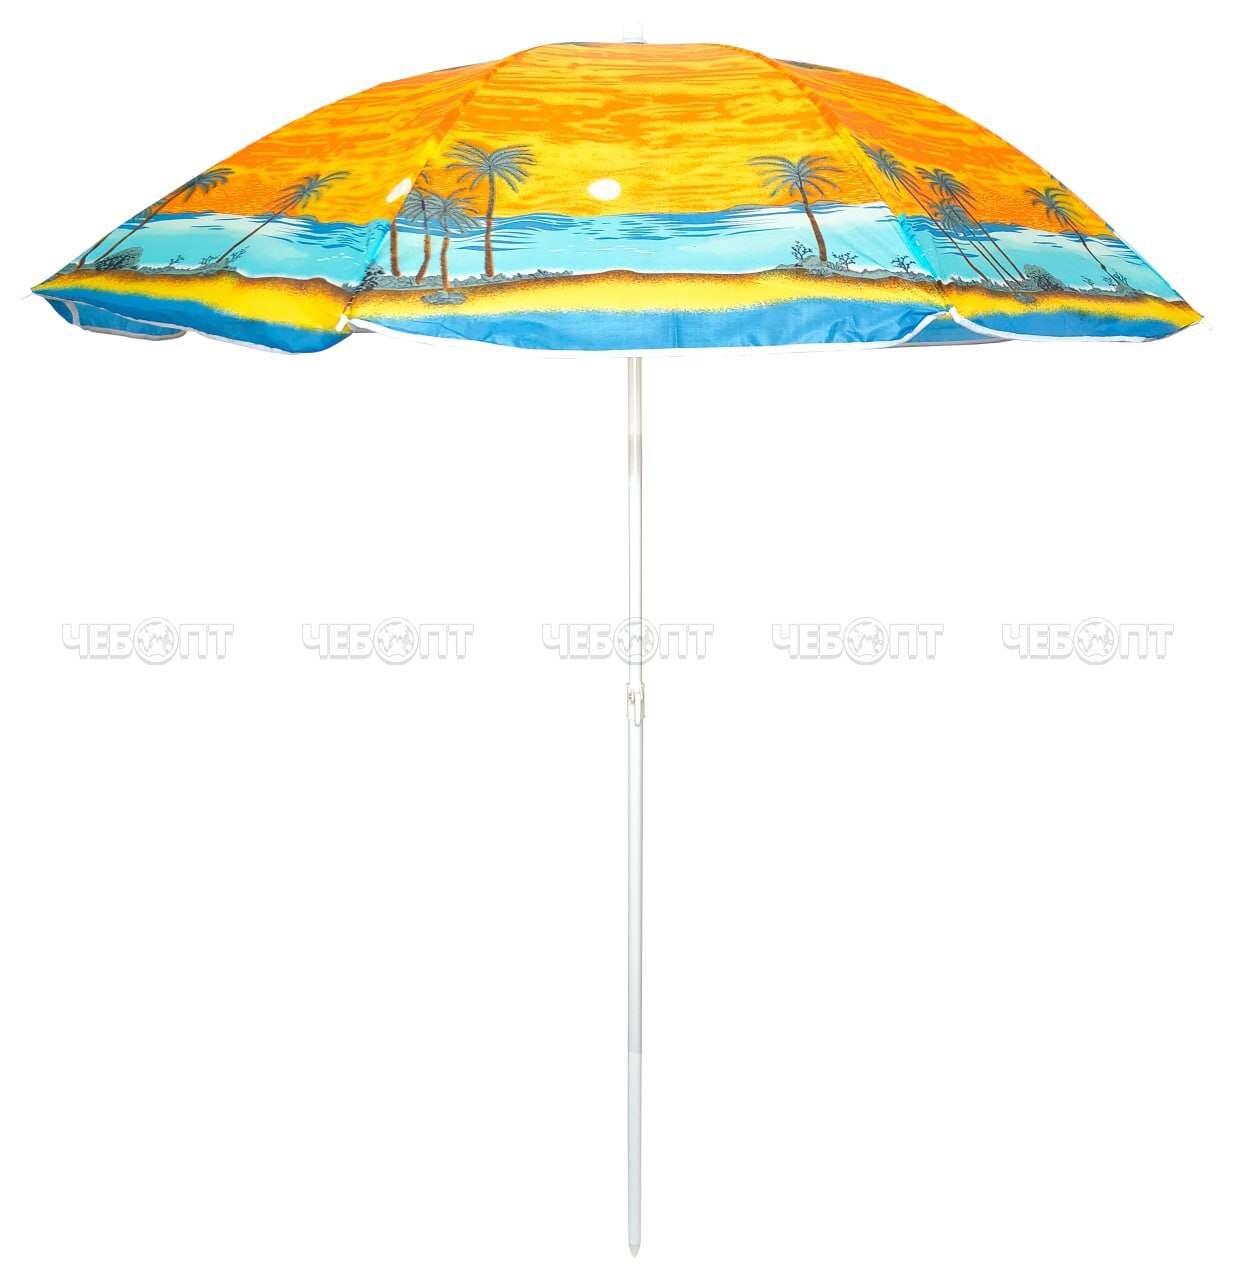 Зонт пляжный складной d - 170 см арт. 290064 $ [30] GOODSEE. ЧЕБОПТ.